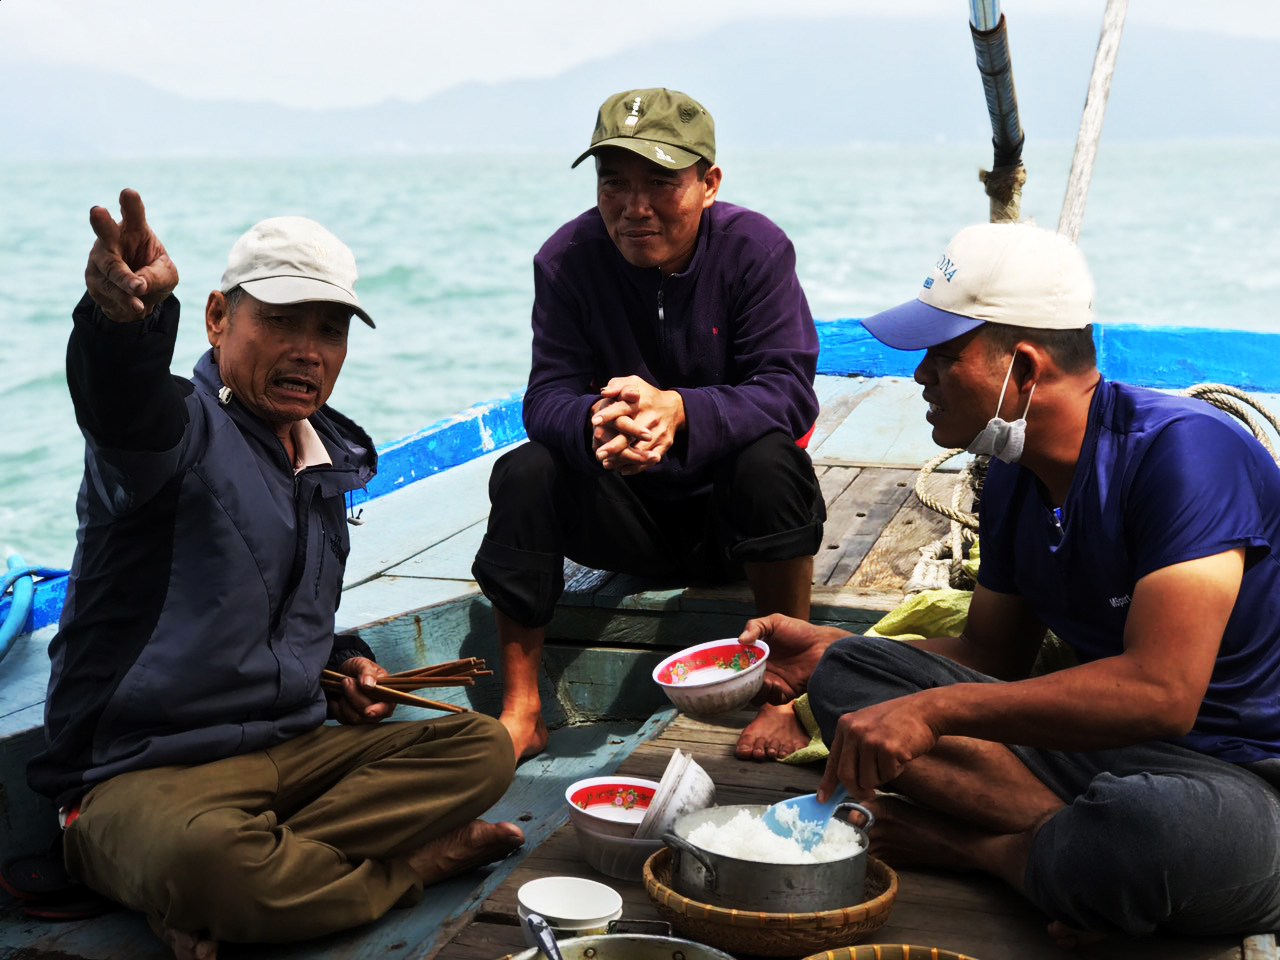 Bữa cơm giữa biển của ông Hiến đãi 2 công nhân làm việc tại đảo Trường Sa về nhà có người mất, gặp sóng bão bị kẹt tại đảo Cù Lao Chàm.